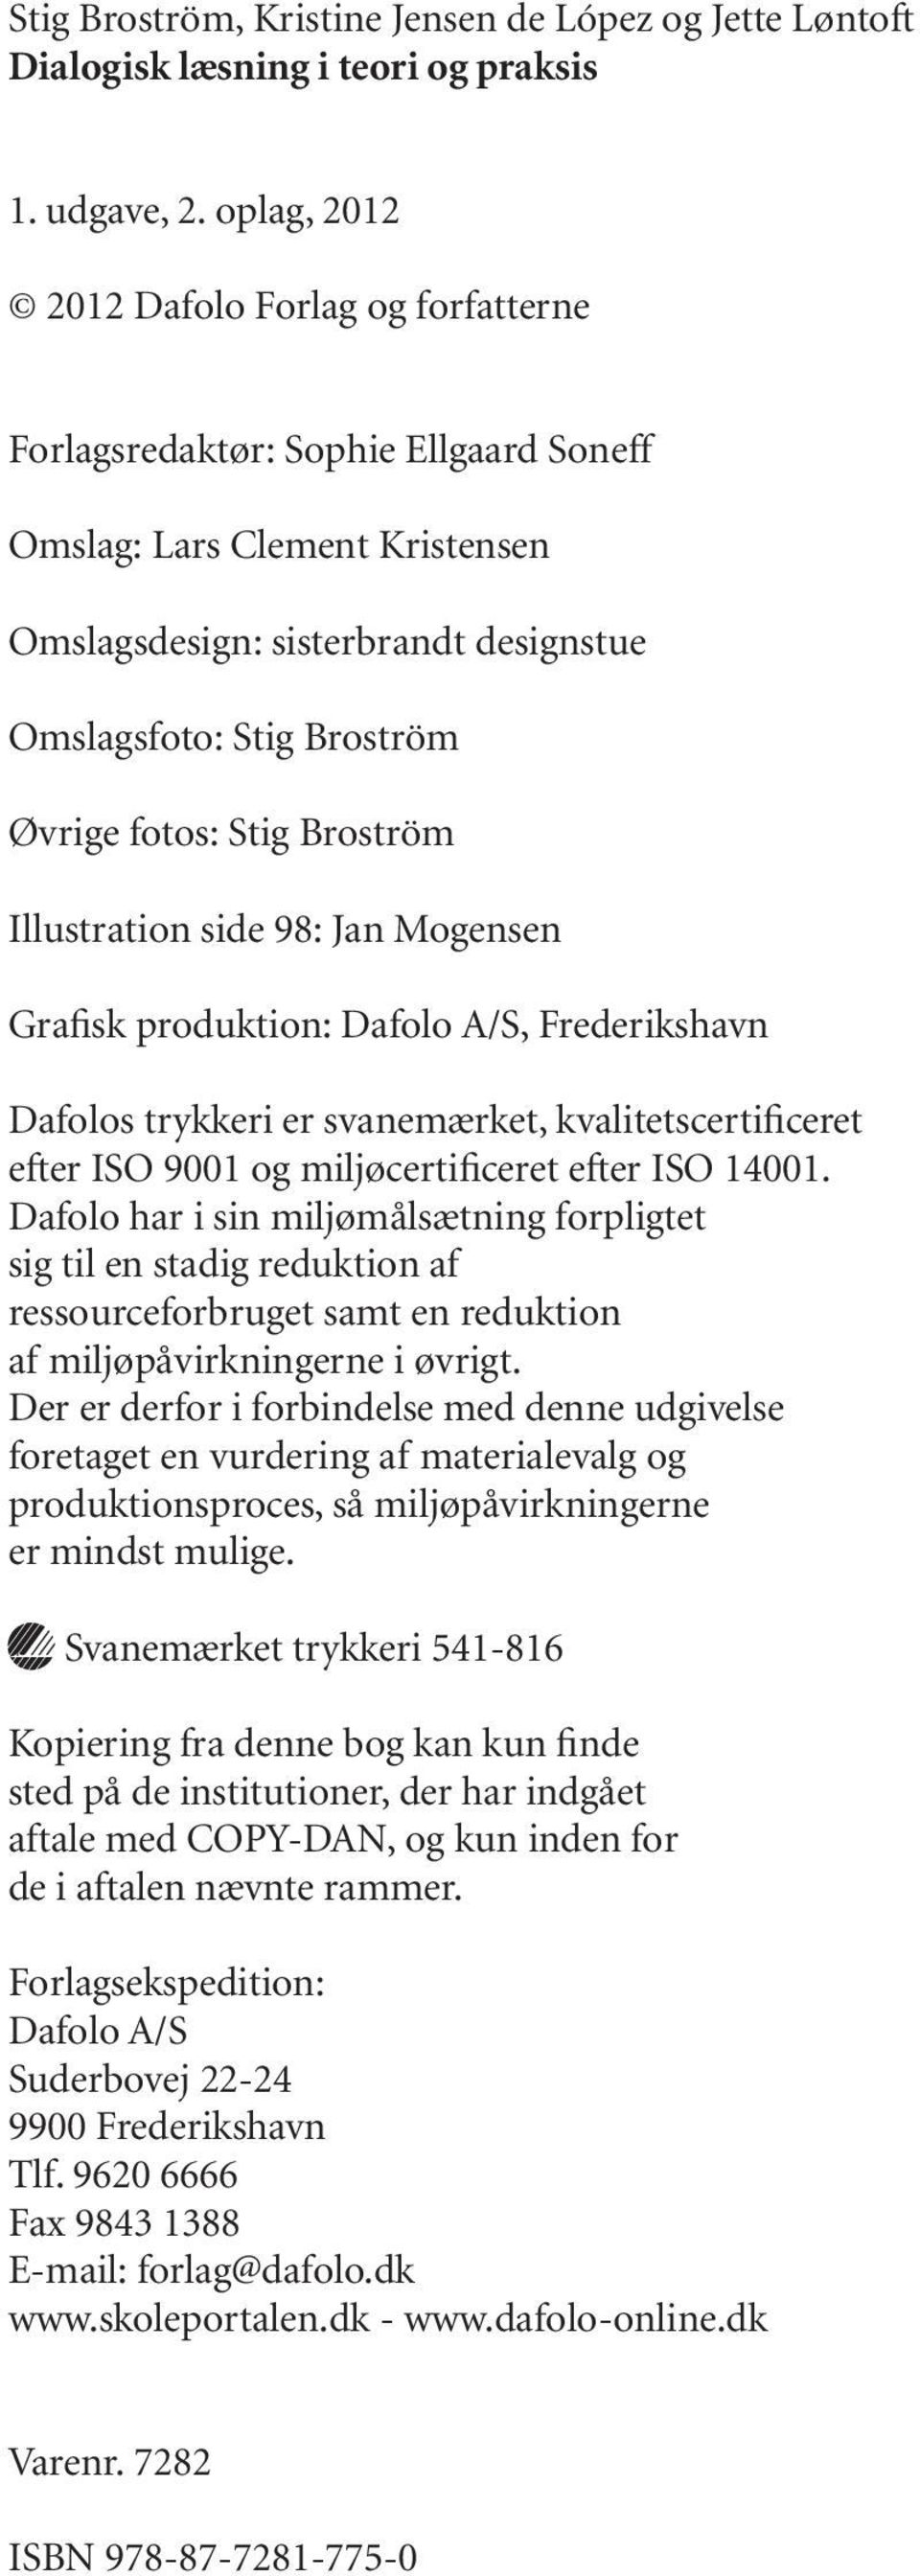 Stig Broström Illustration side 98: Jan Mogensen Grafisk produktion: Dafolo A/S, Frederikshavn Dafolos trykkeri er svanemærket, kvalitetscertificeret efter ISO 9001 og miljøcertificeret efter ISO